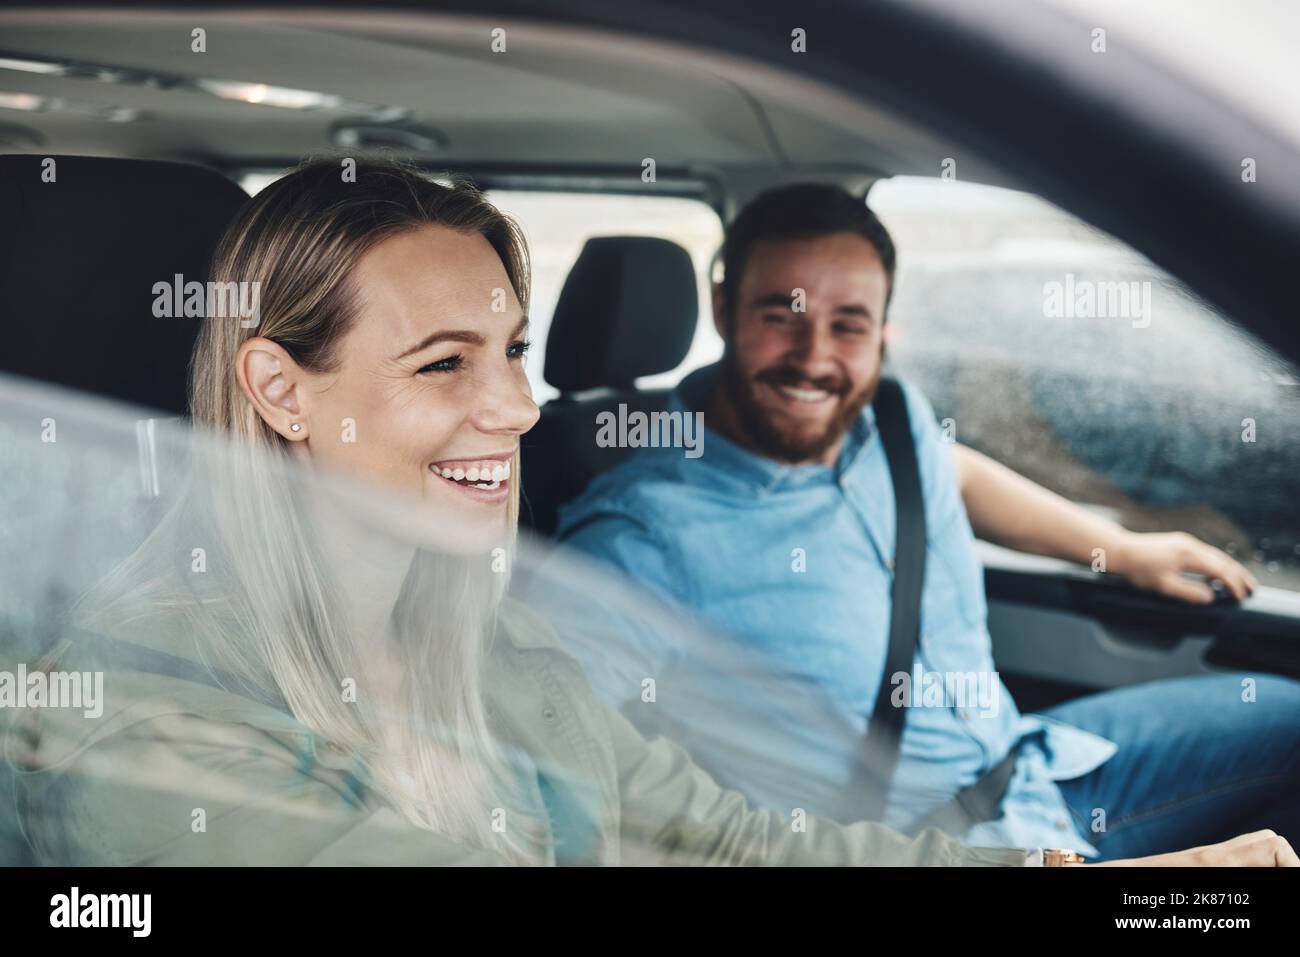 Paar, glücklich und Autoreise von Menschen mit einem Lächeln mit dem Auto Transport. Glück, Liebe und Entspannung Reisen fahren Erfahrung eines Stockfoto